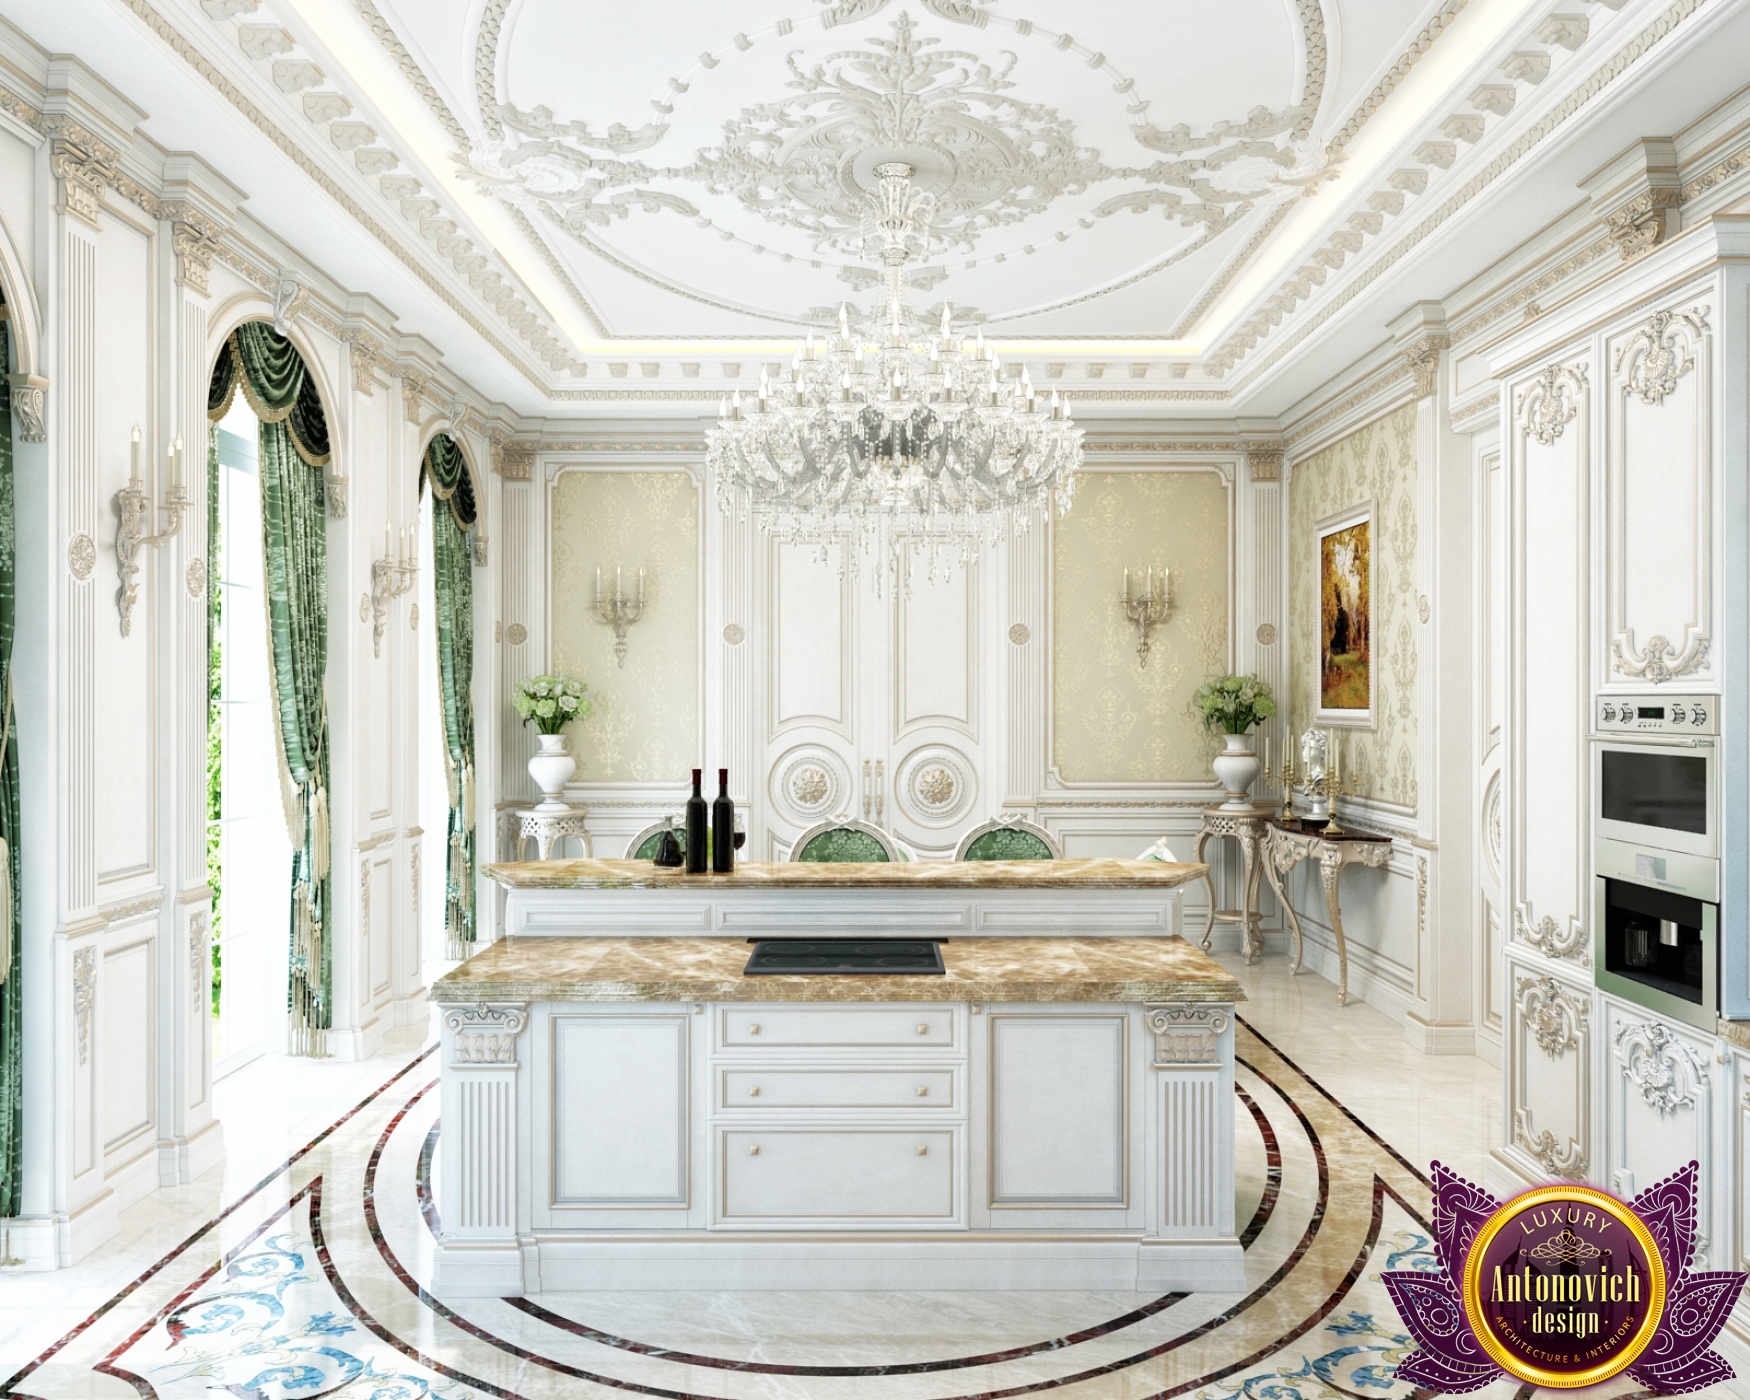 luxury royal kitchen design